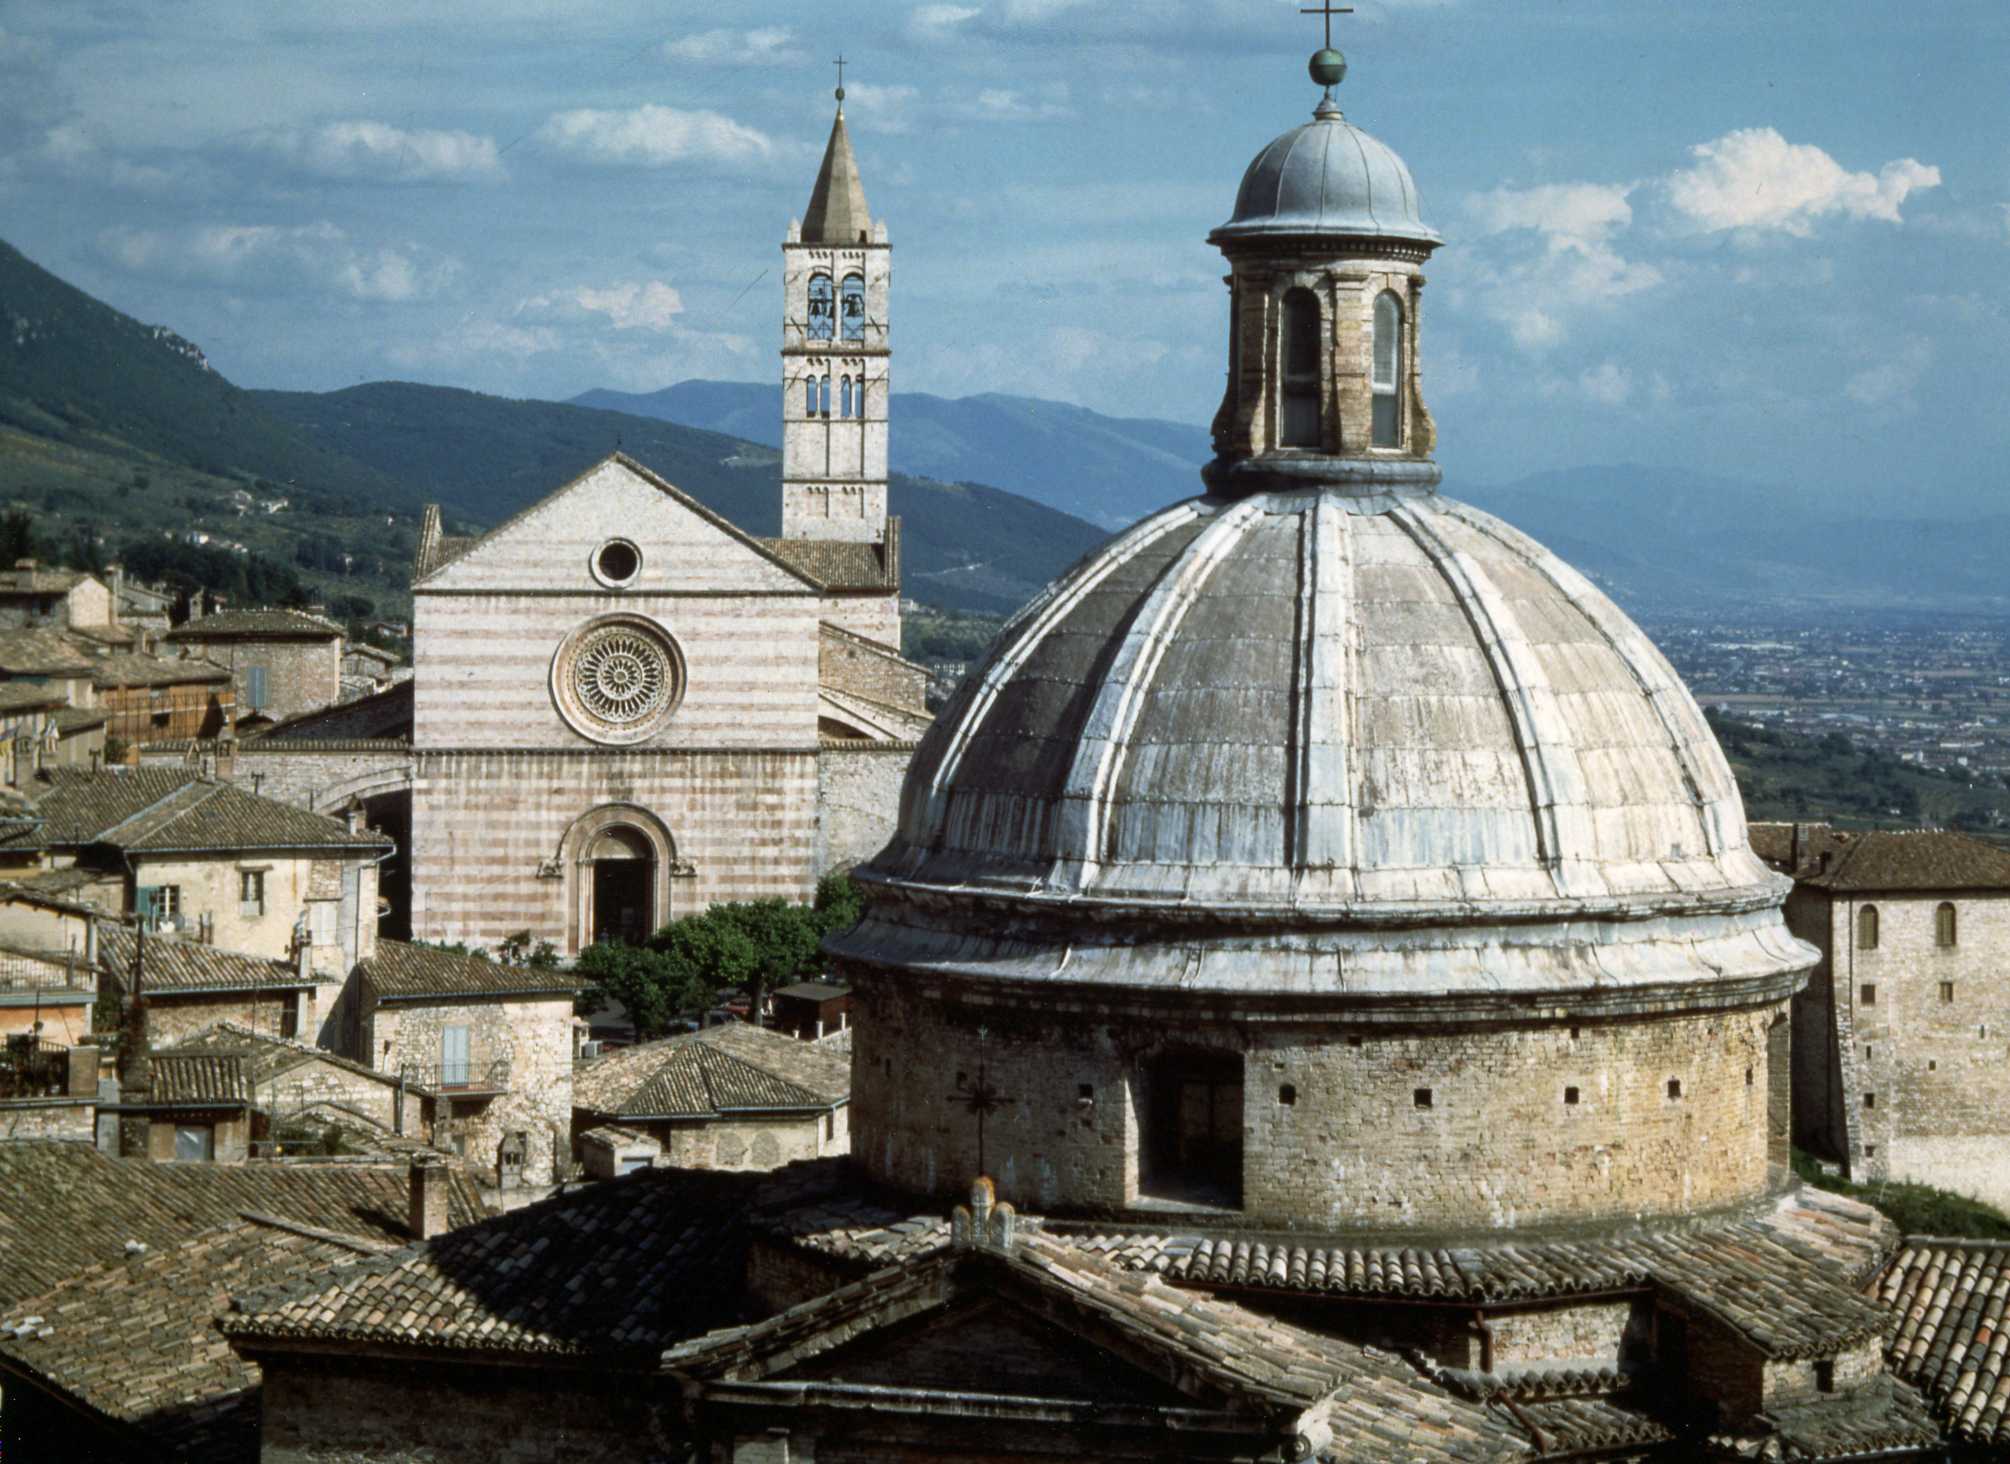 Basilica-of-Santa-Chiara-2.jpg